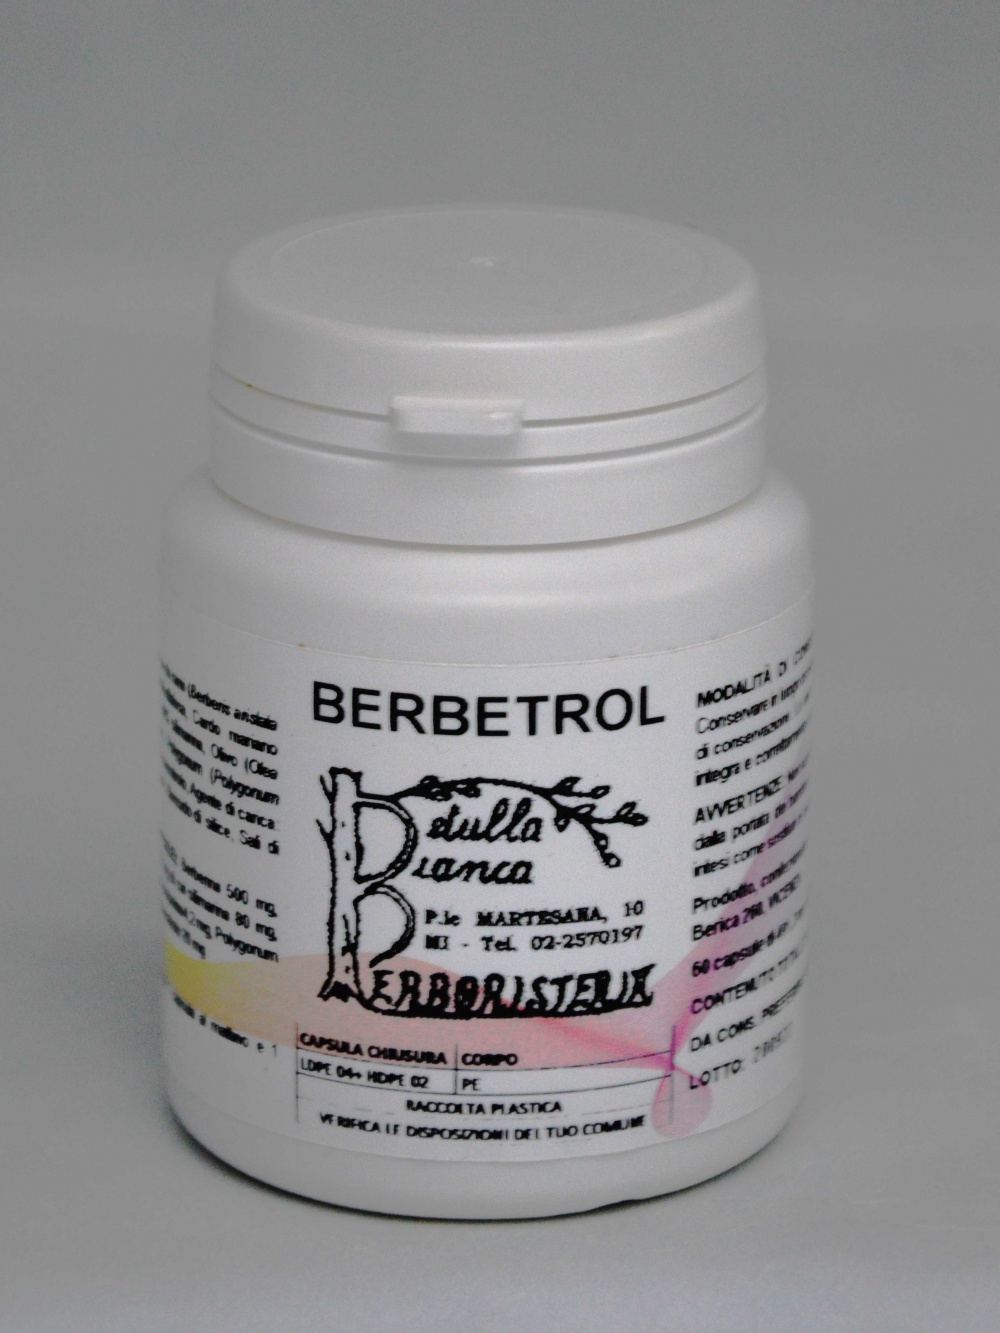 Berbetrol capsule